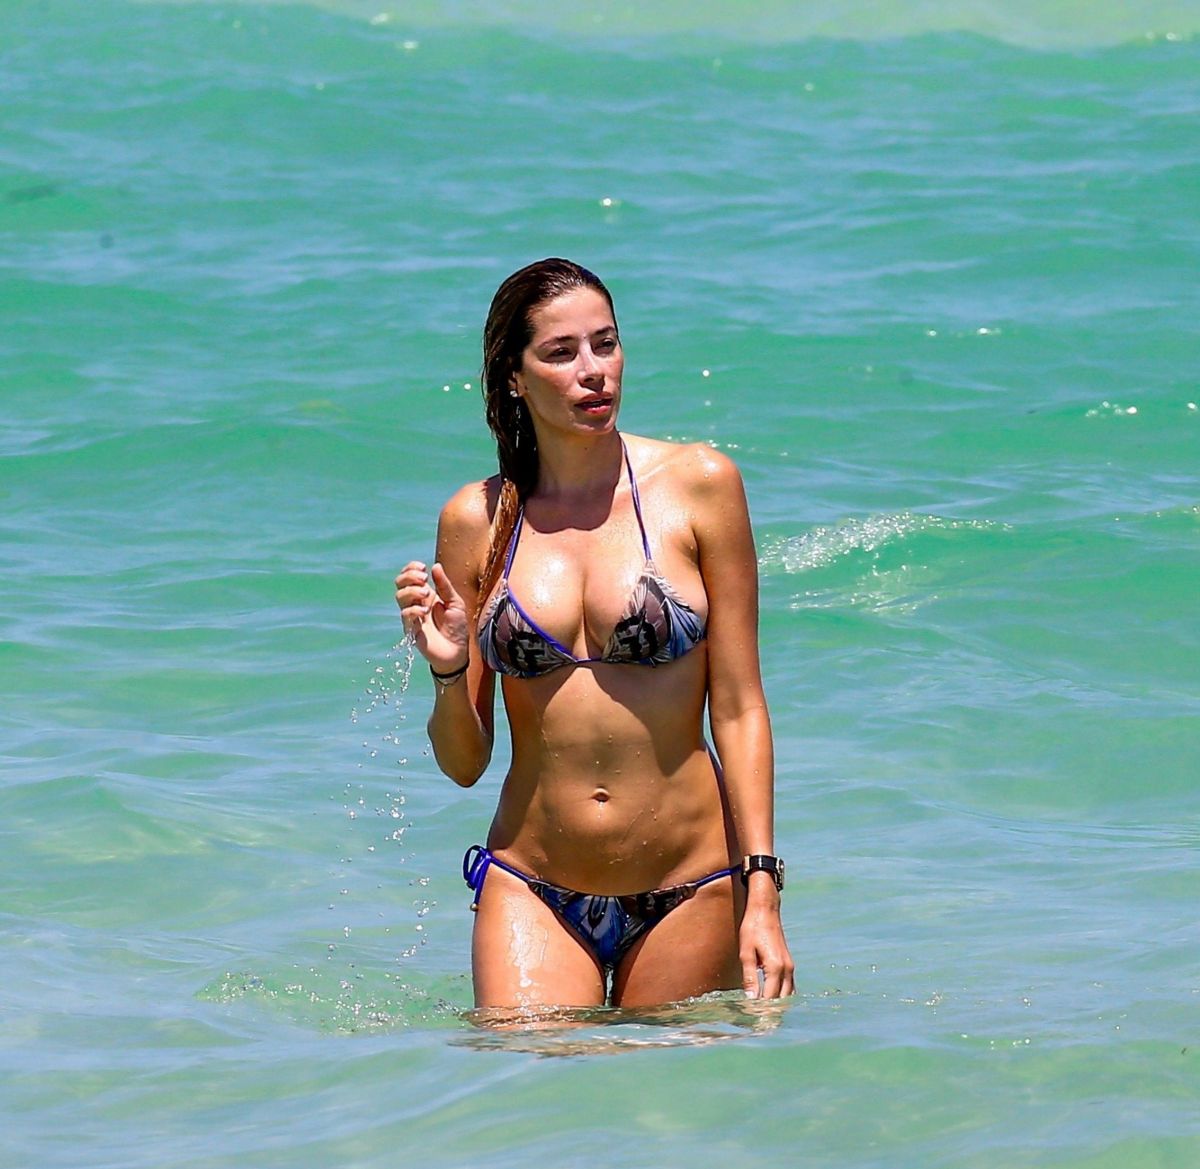 AIDA YESPICA In Bikini On The Beach In Miami 06 25 2017 HawtCelebs